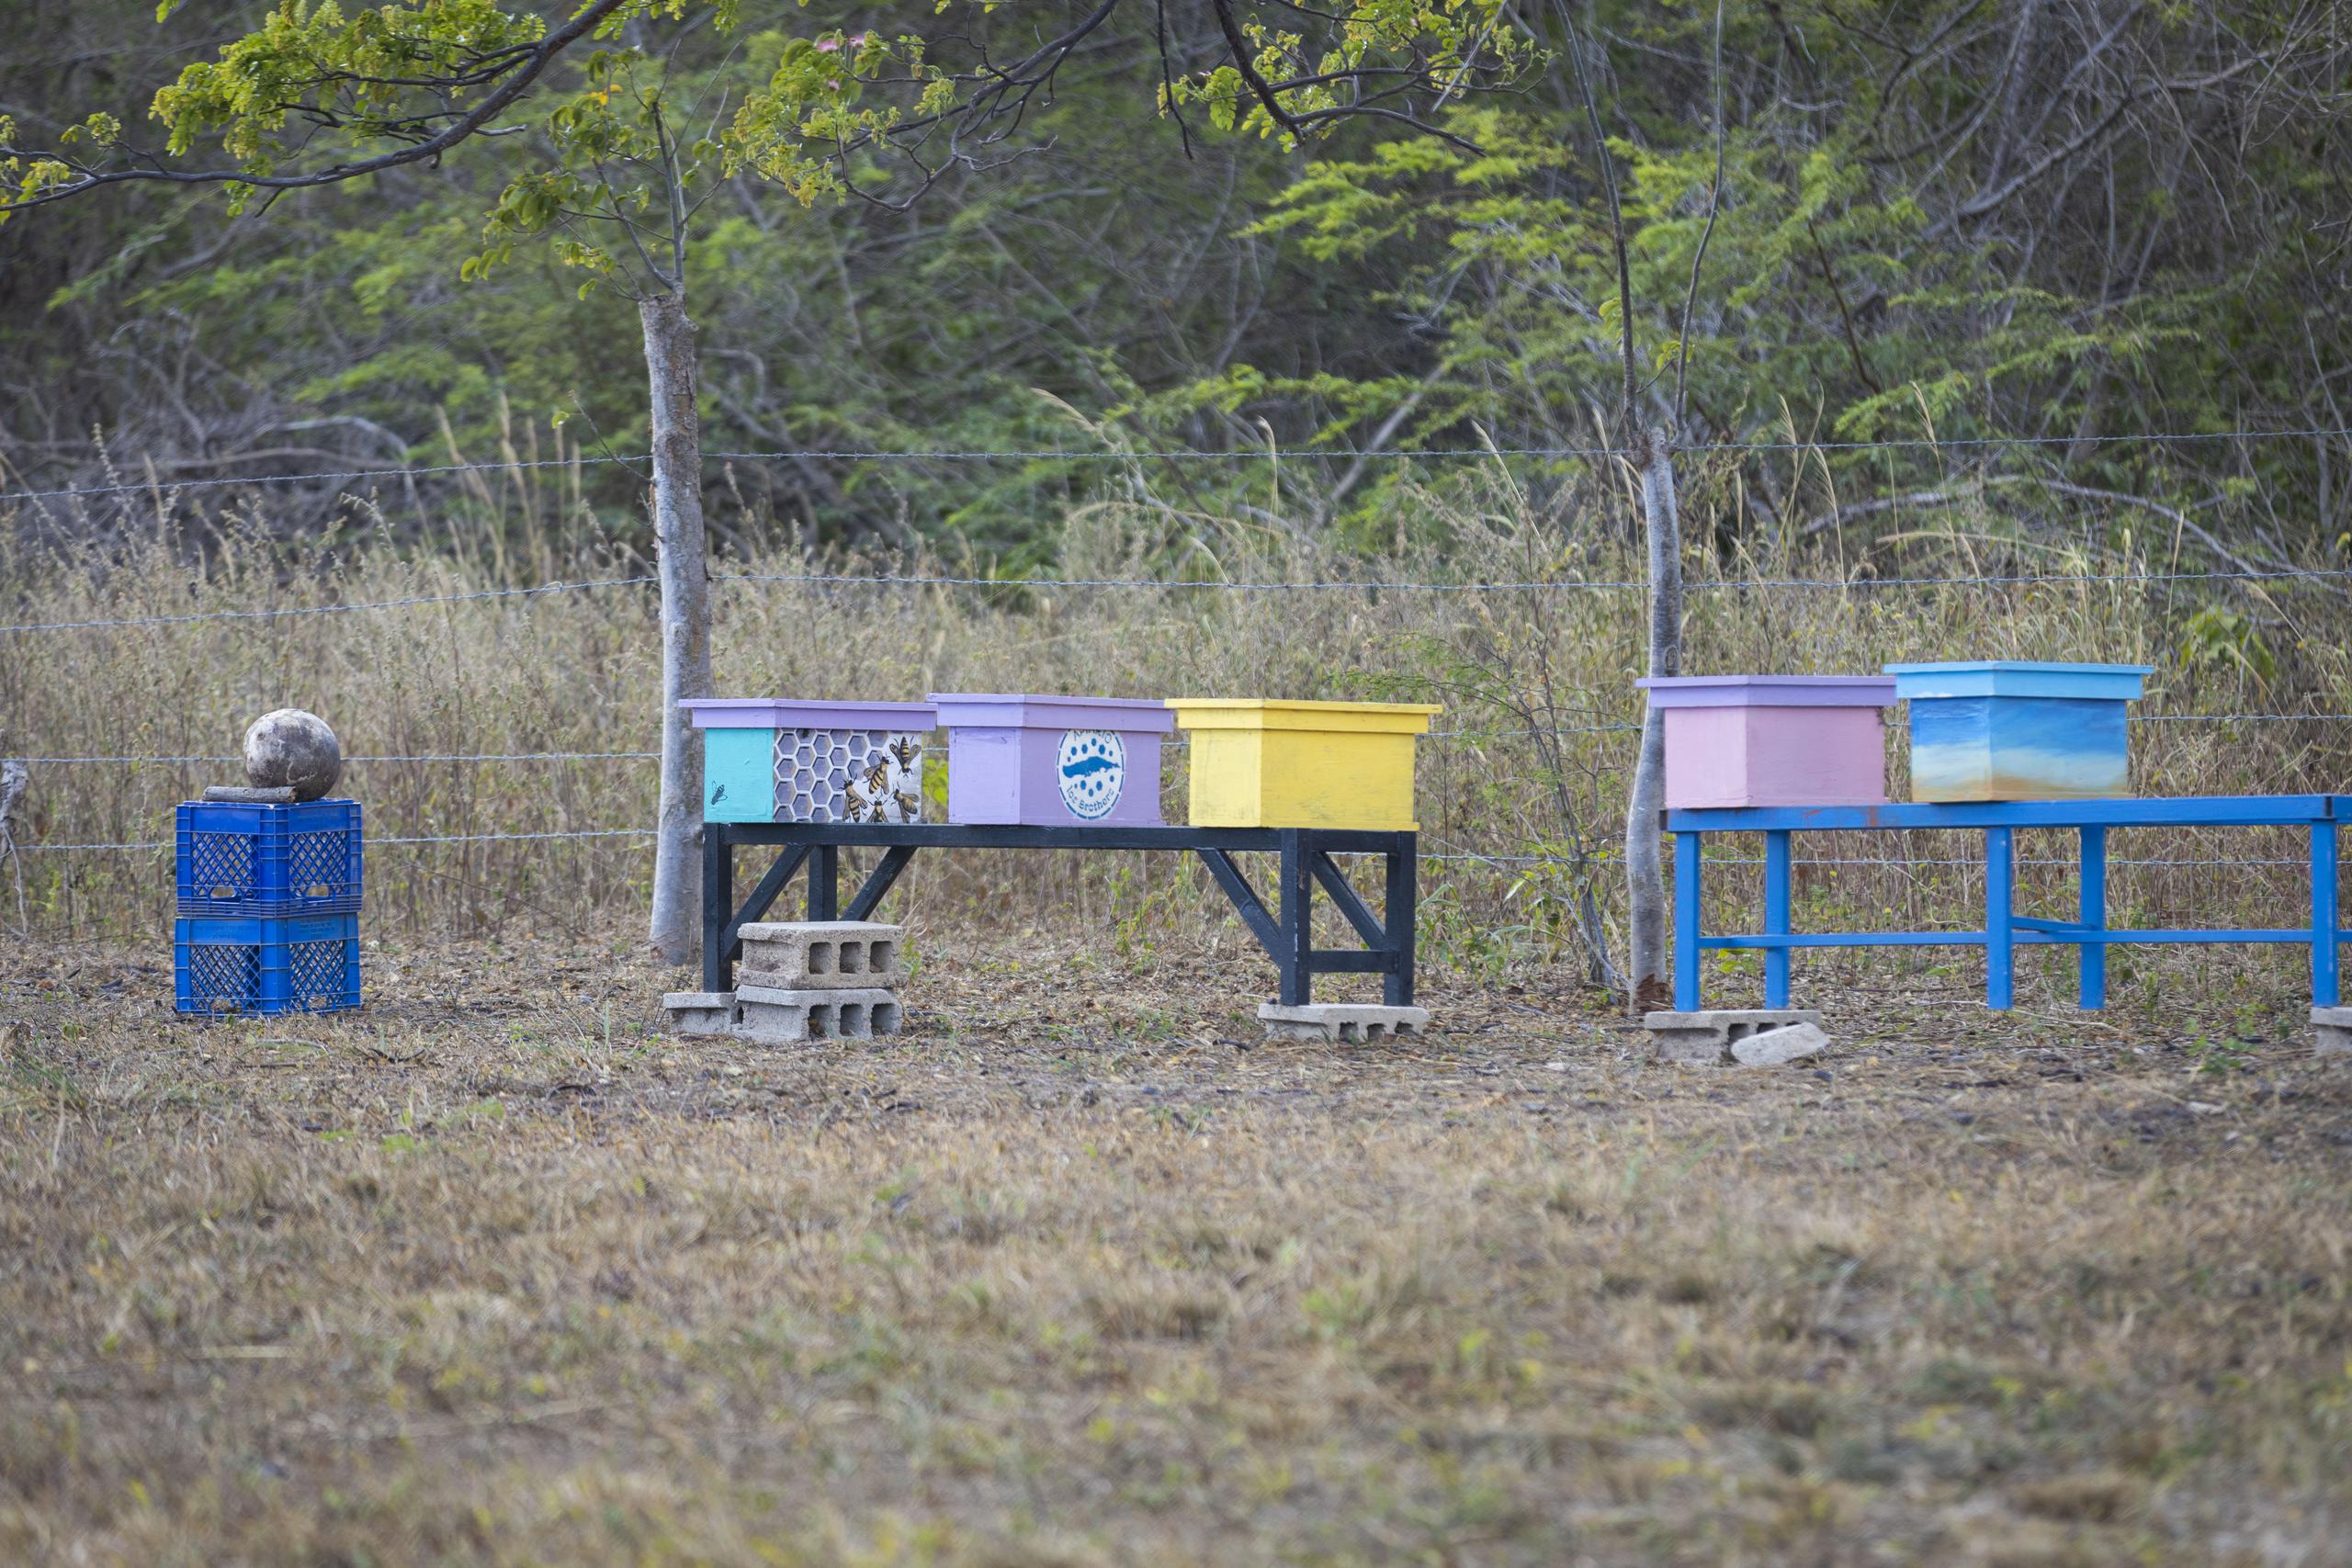 Una alianza con el apicultor Mario A. O’Neill las llevó a establecer el apiario La Dulzura.